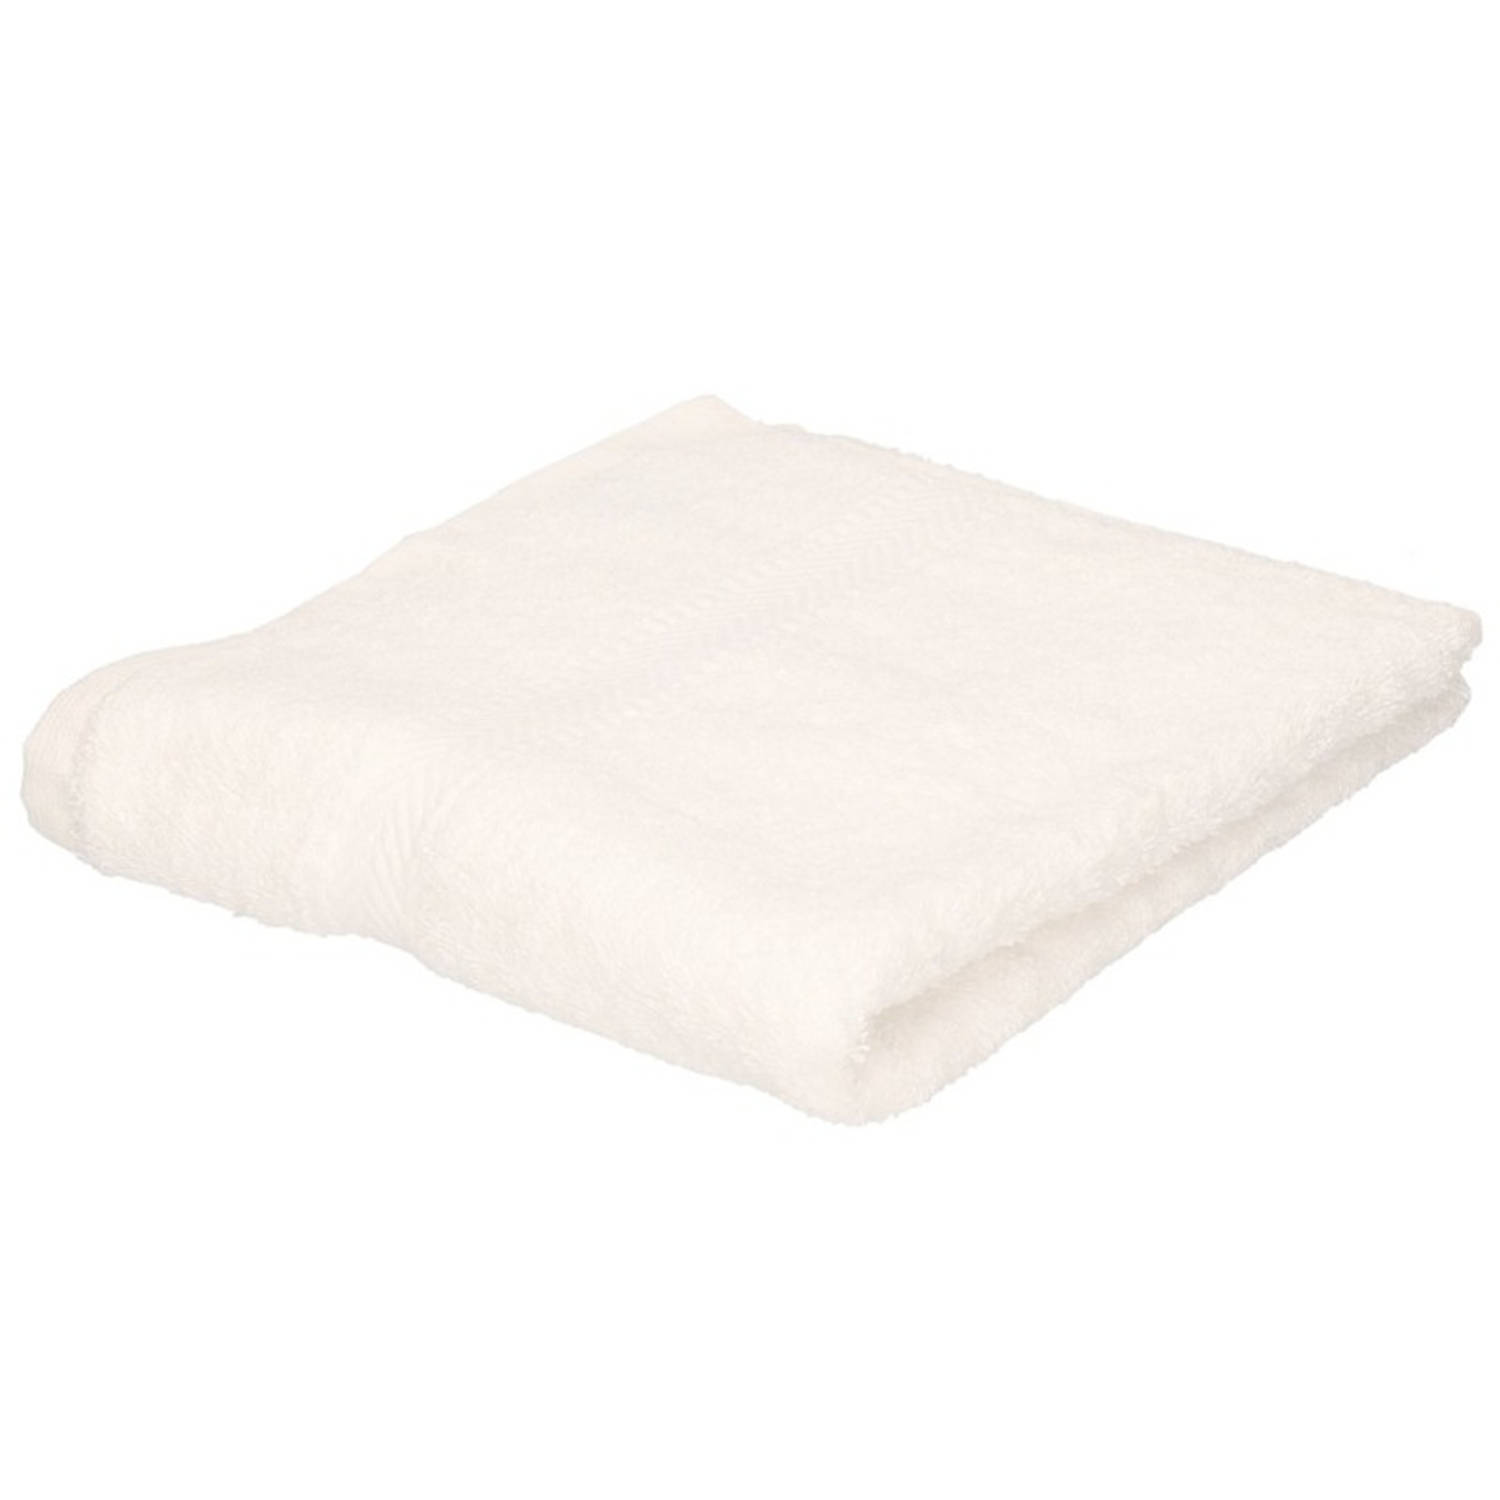 Luxe handdoek wit 50 x 90 cm 550 grams Badkamer textiel badhanddoeken